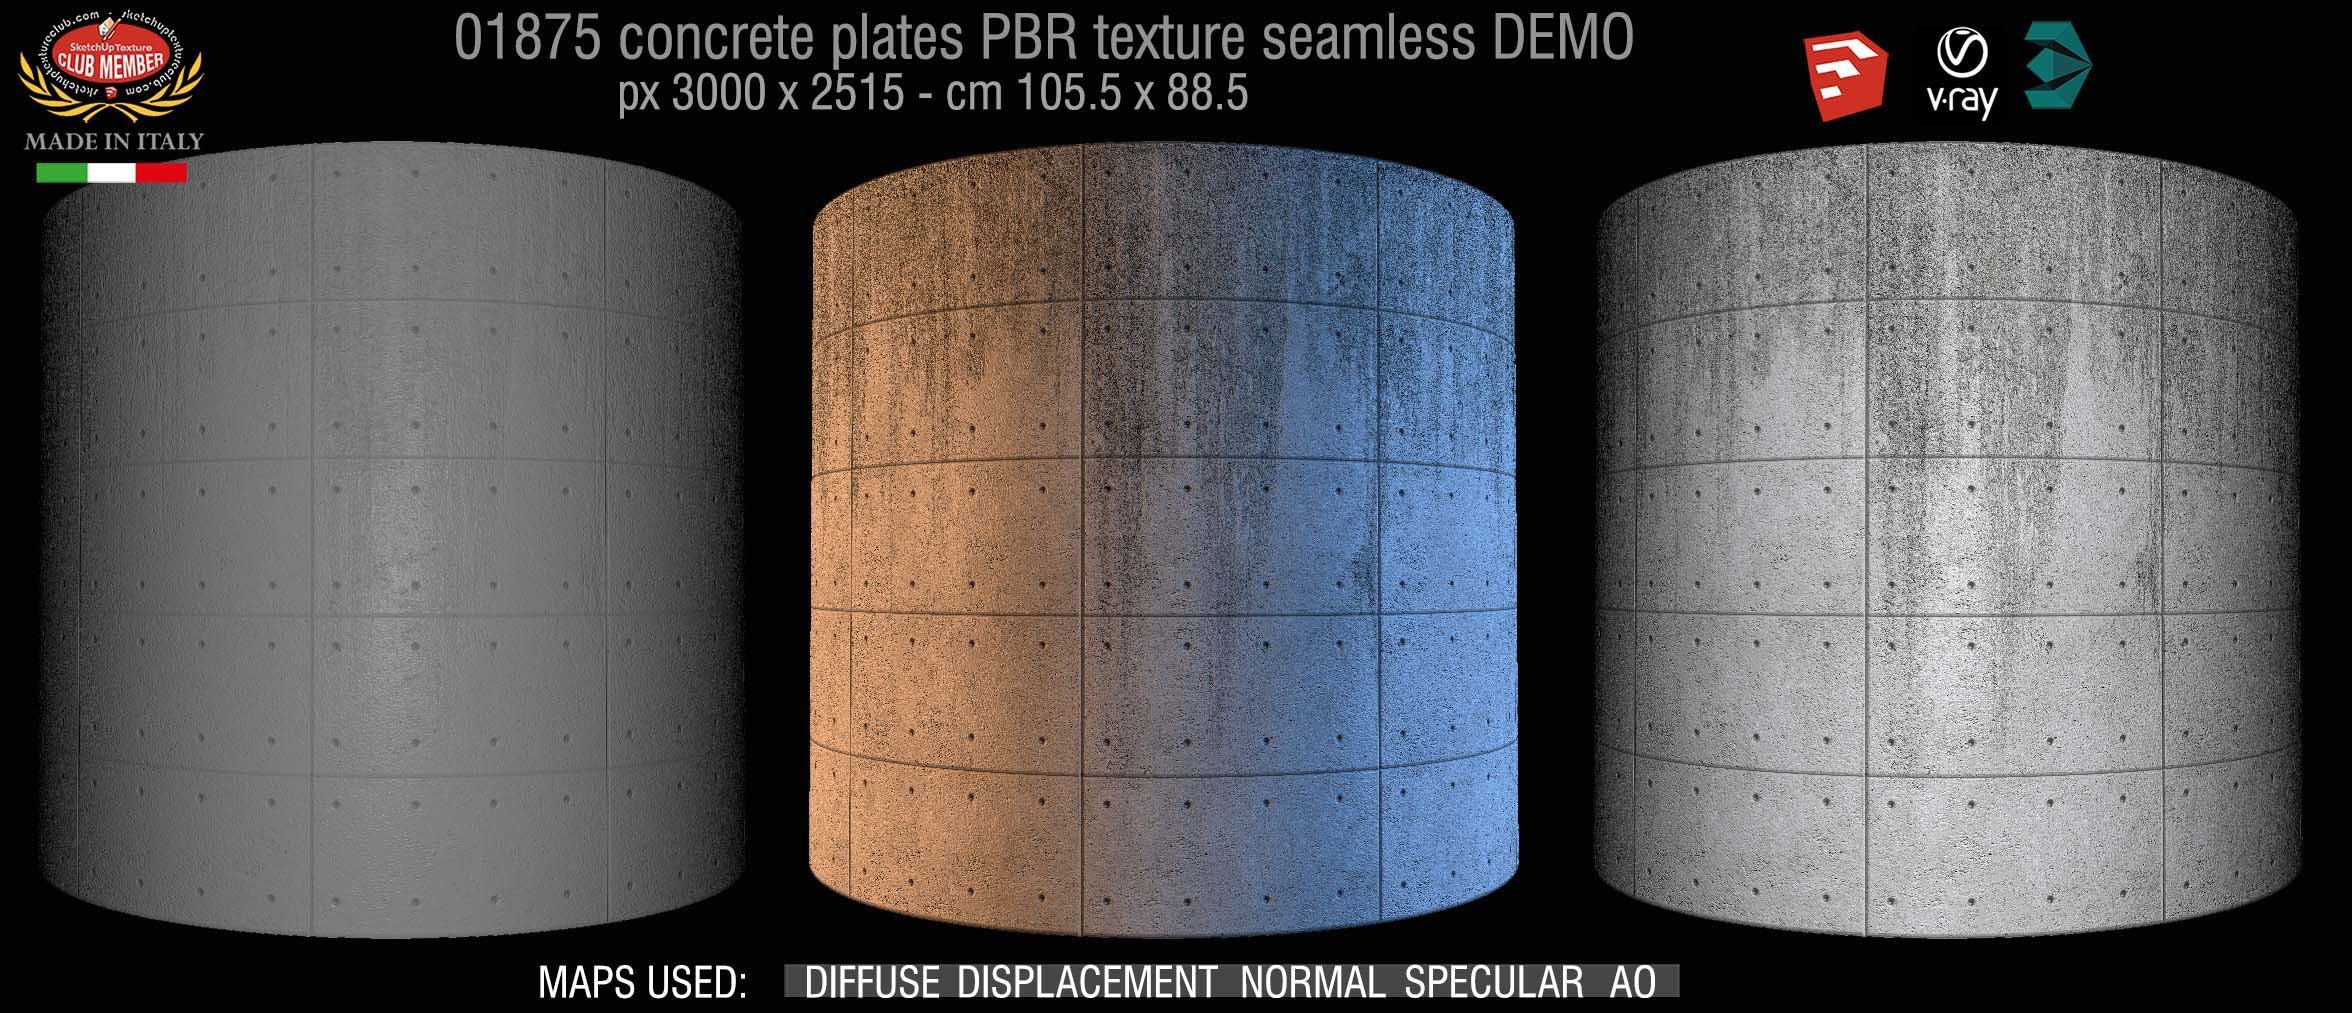 01875 tadao ando concrete plates PBR texture seamless DEMO